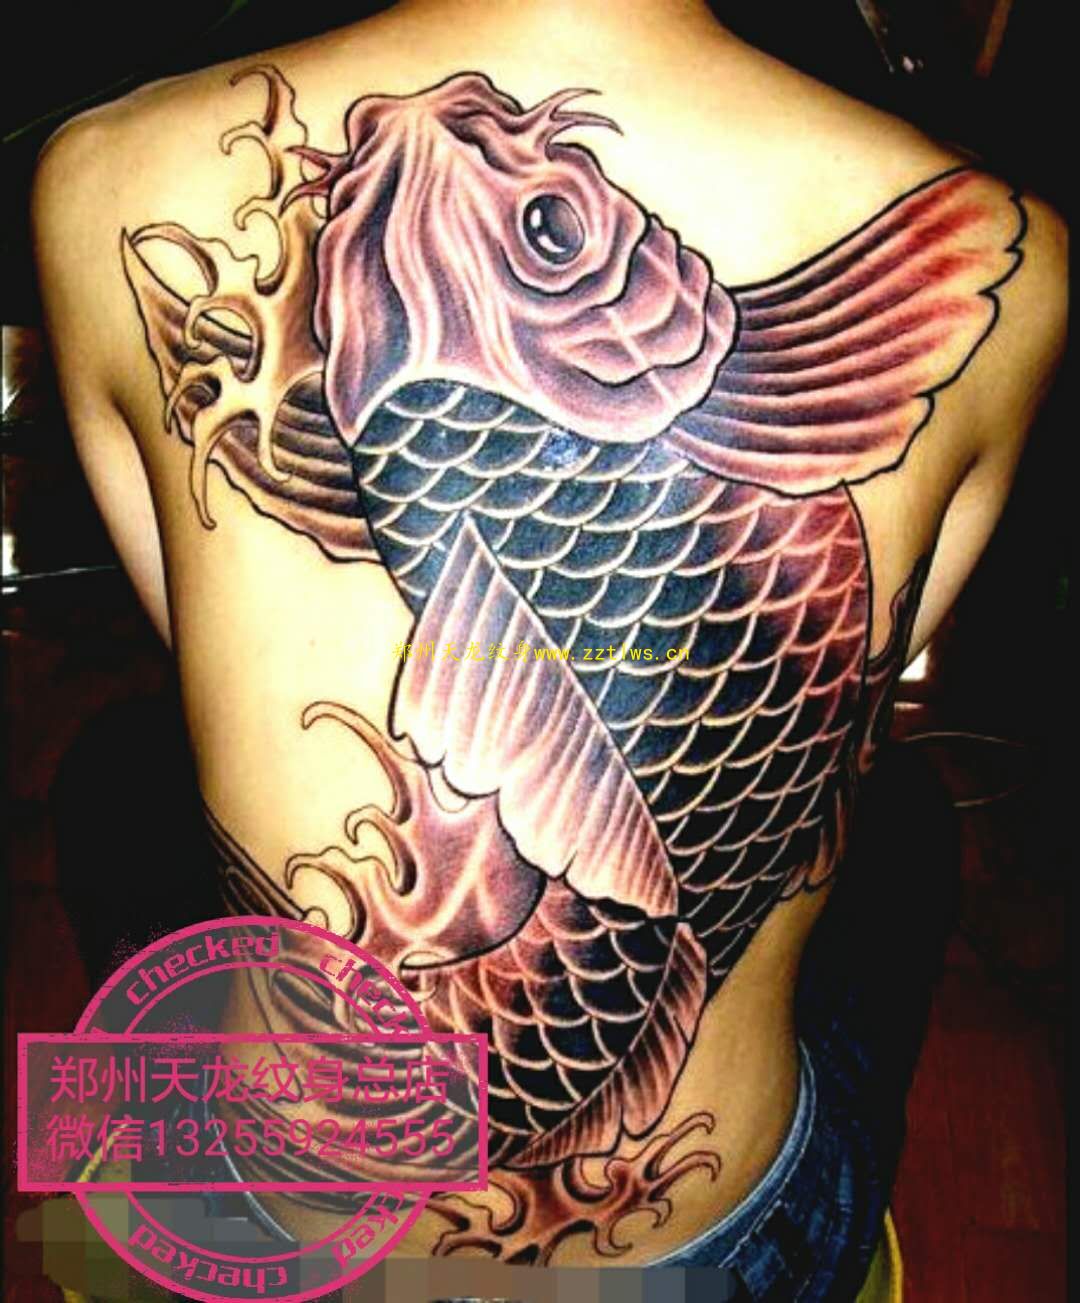 Tattoo uploaded by 北京塘主开运纹身 • 传统鲤鱼牡丹遮盖tattoo • Tattoodo